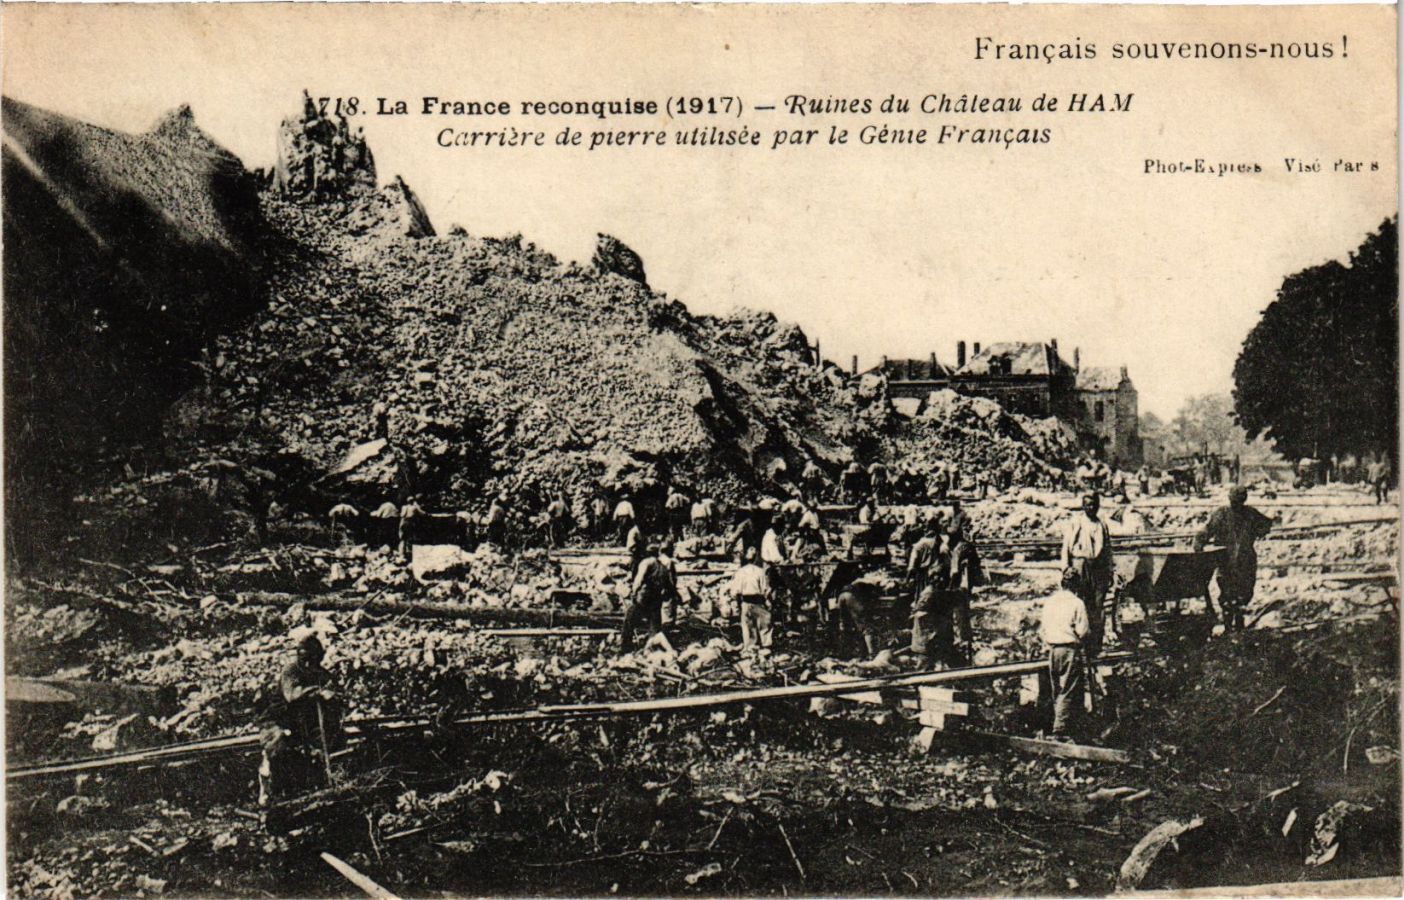 CPA La France reconquise (1917) - Ruins du Chateau de HAM - Career (295364)